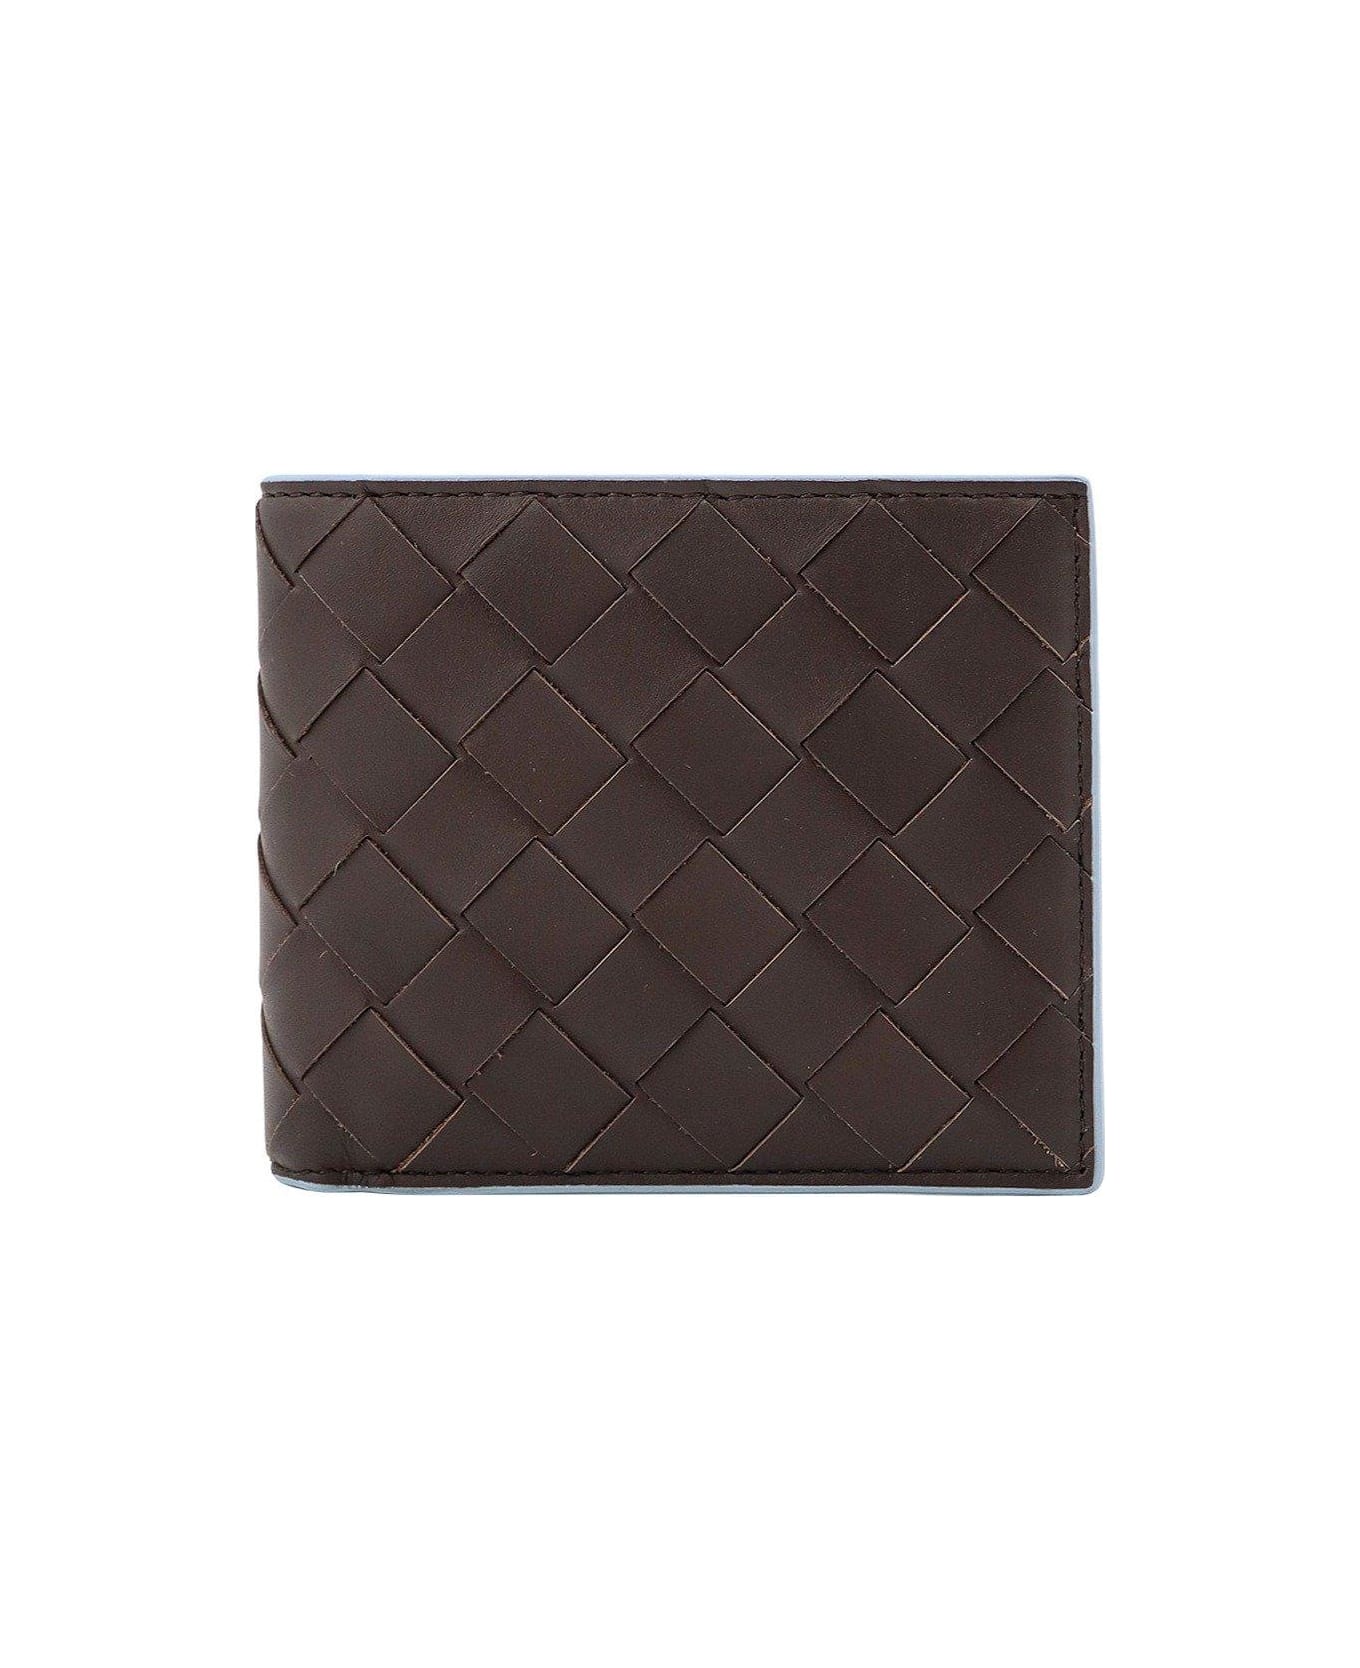 Bottega Veneta Intrecciato Bi-fold Wallet - Brown 財布